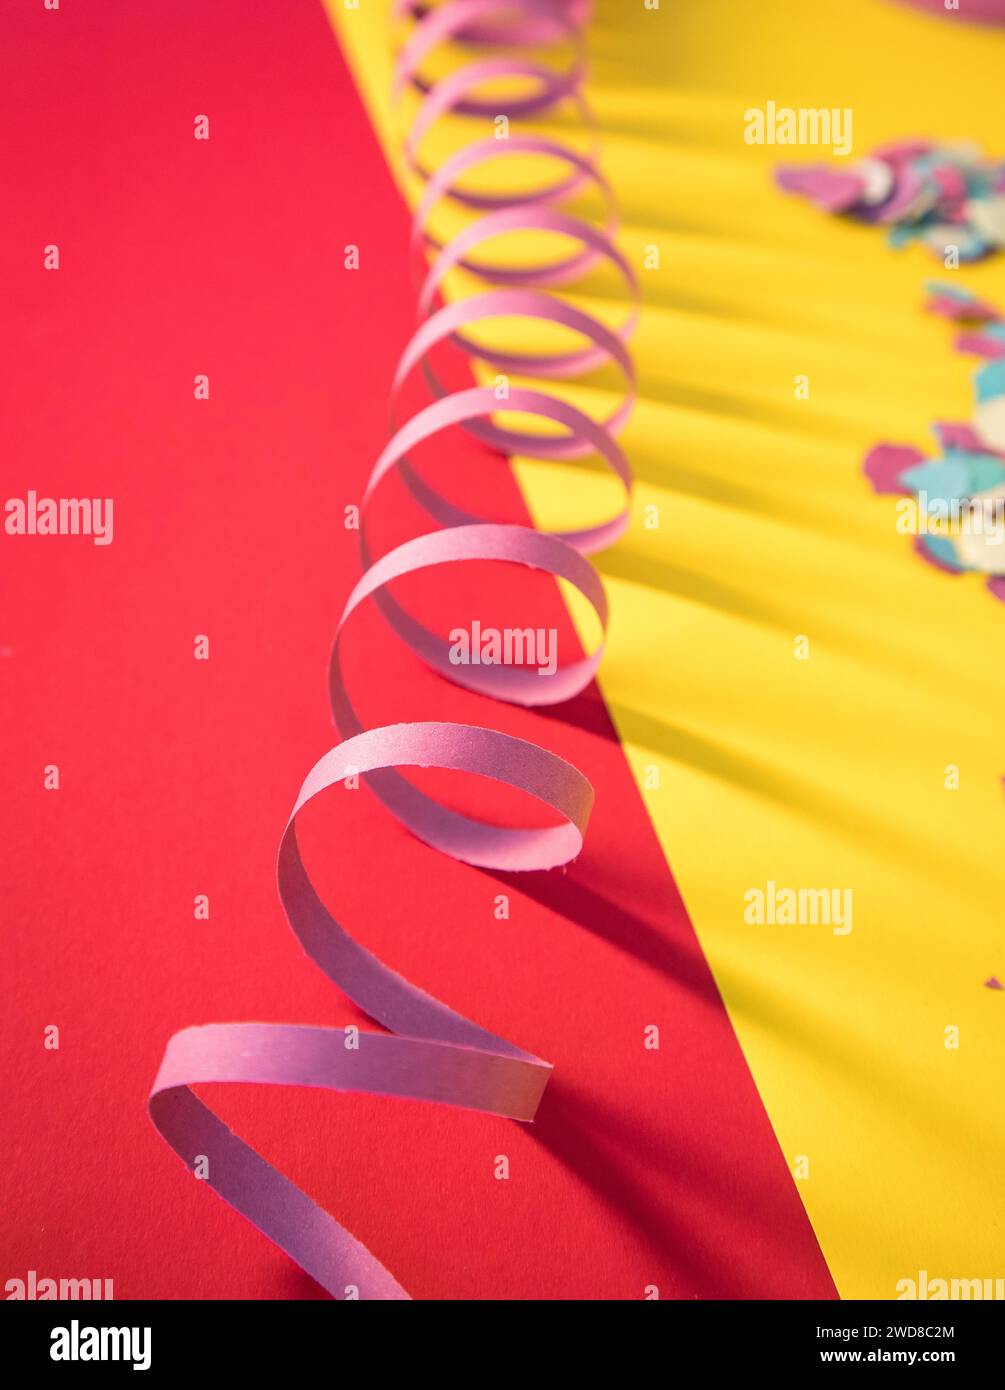 Immagine simbolica che allude al Carnevale utilizzando rastrellieri e coriandoli che trasmettono molti colori tipici della stagione festiva. Copia spazio. Foto Stock